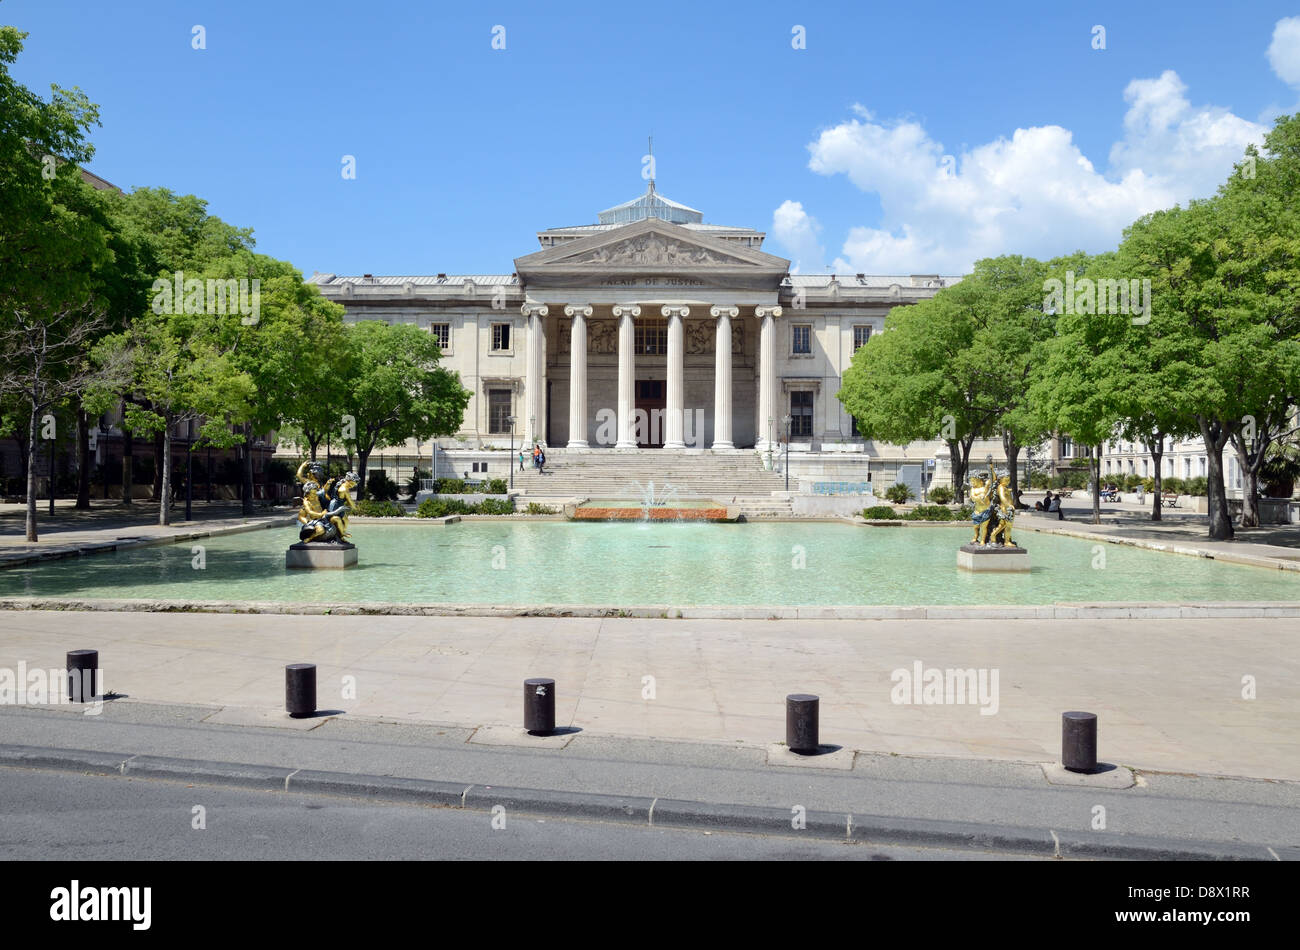 Architecture néo-classique du Palais de Justice (1856-1862) cours de droit ou palais de justice de Marseille sur La Place Montyon Marseille Provence France Banque D'Images